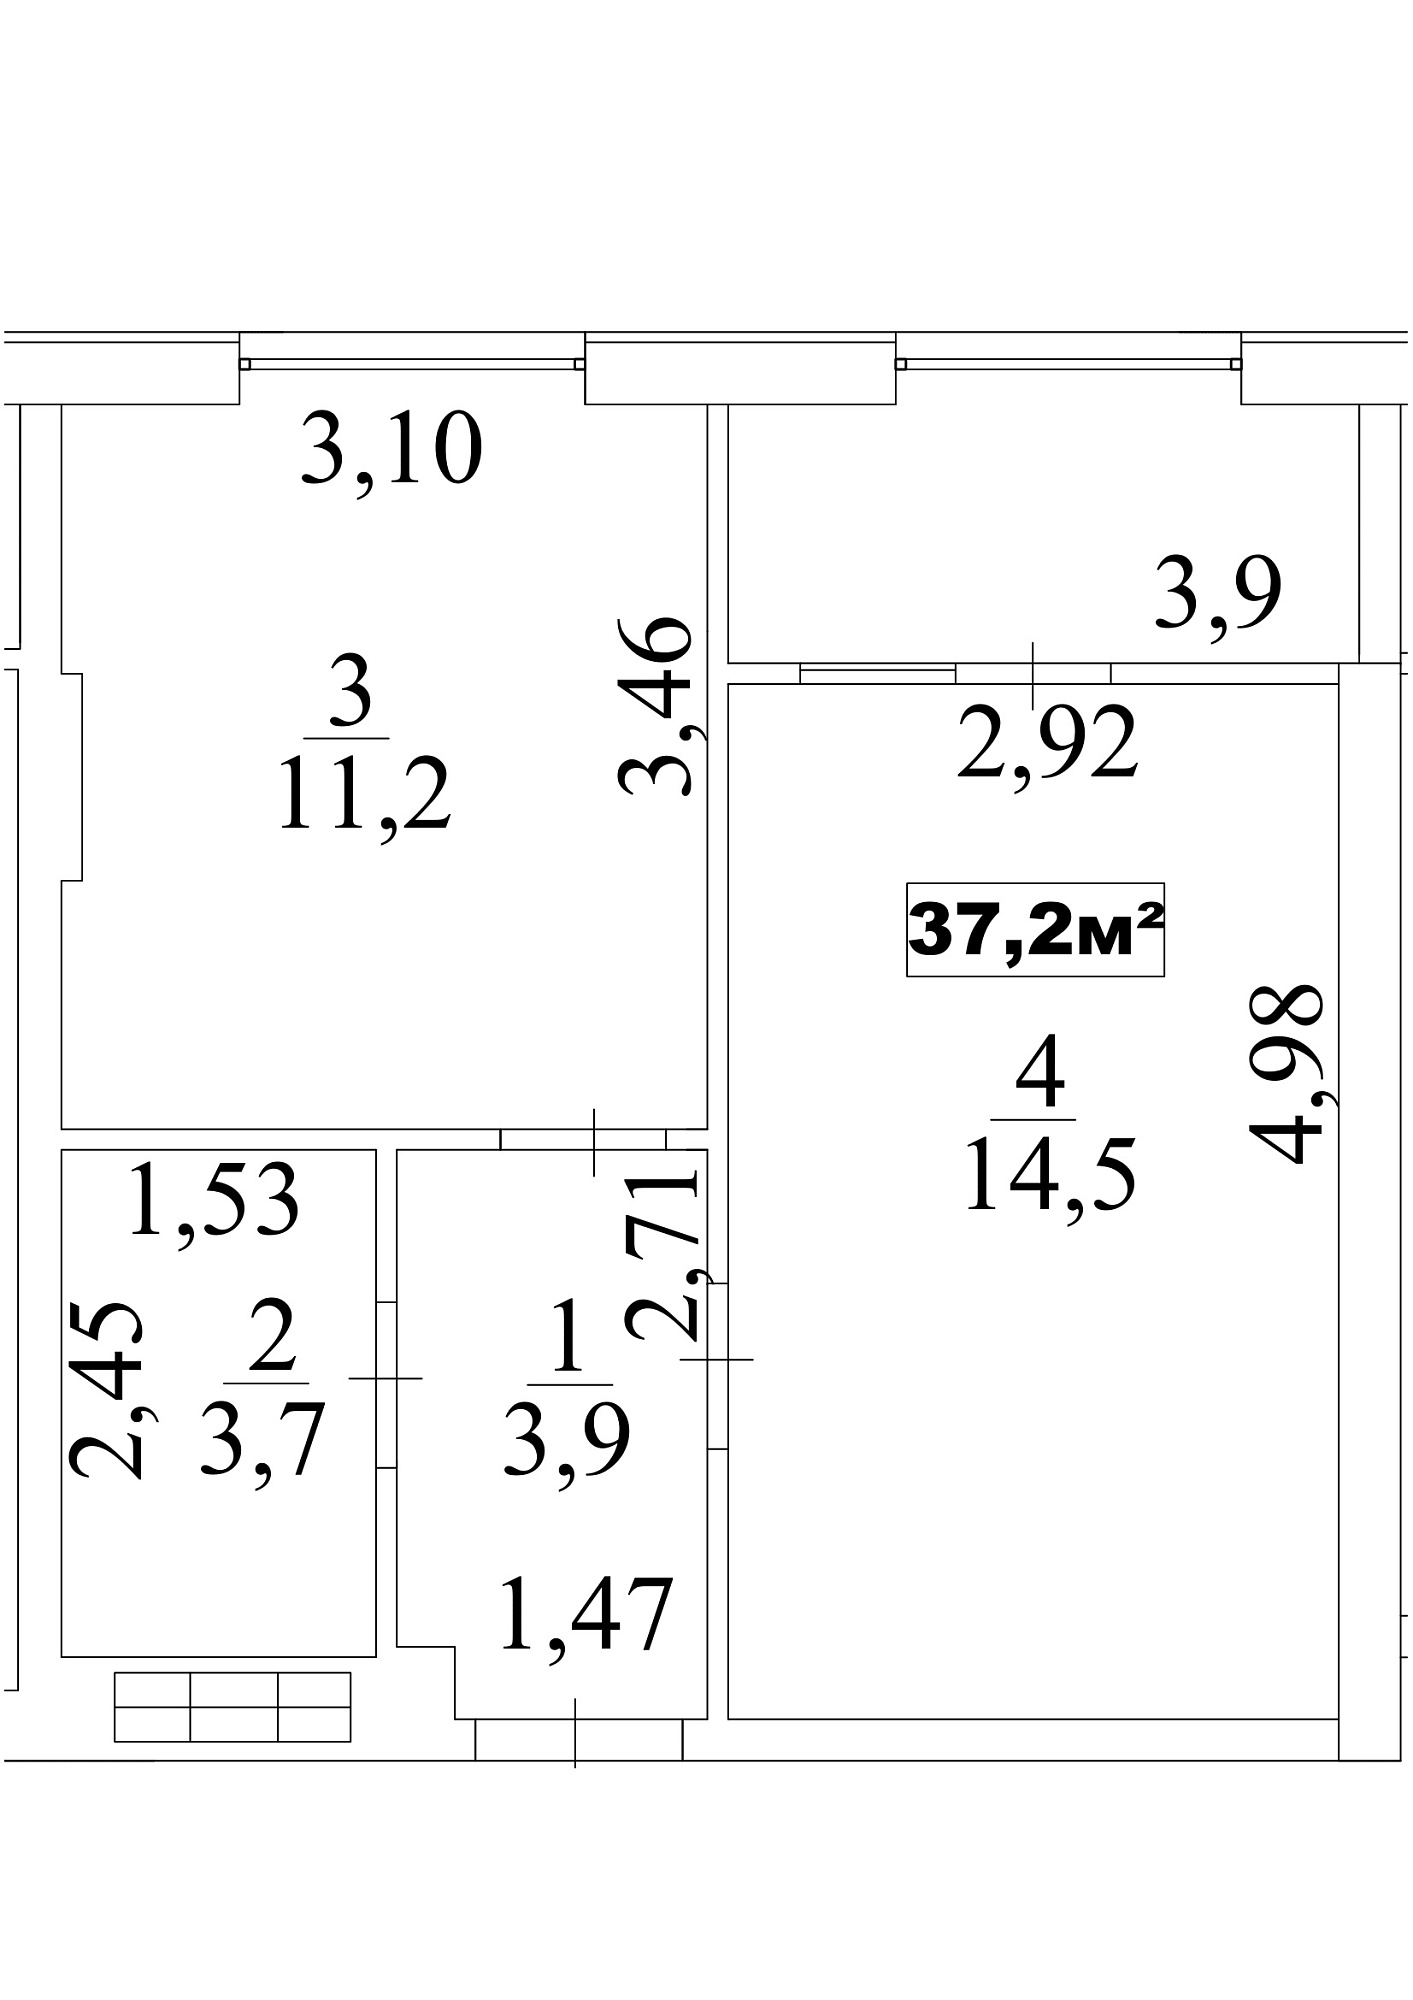 Планування 1-к квартира площею 37.2м2, AB-10-01/0007а.